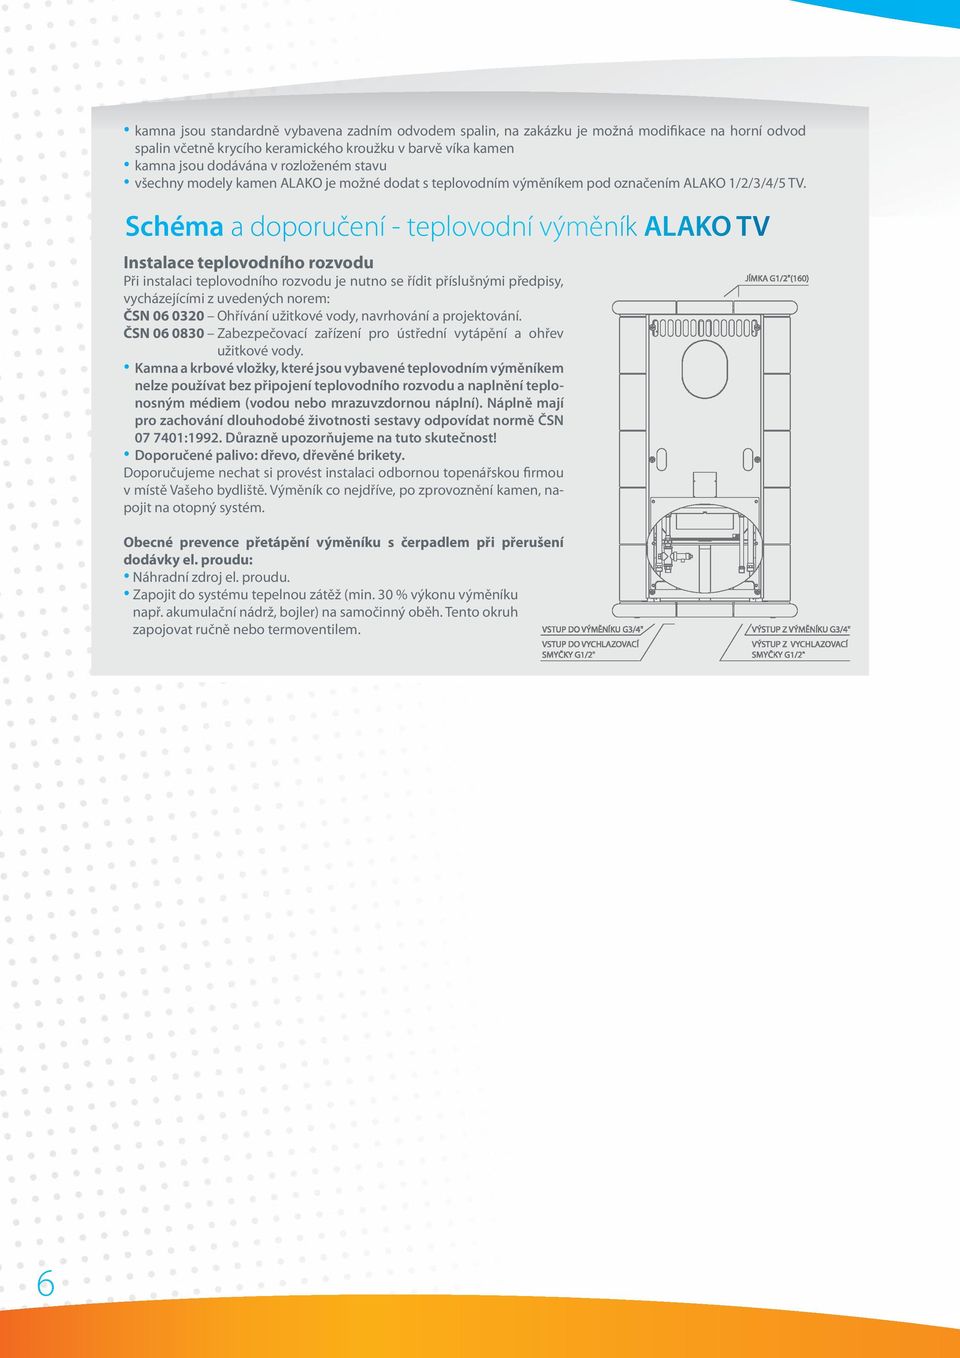 Schéma a doporučení - teplovodní výměník ALAKO TV Instalace teplovodního rozvodu Při instalaci teplovodního rozvodu je nutno se řídit příslušnými předpisy, vycházejícími z uvedených norem: ČSN 06